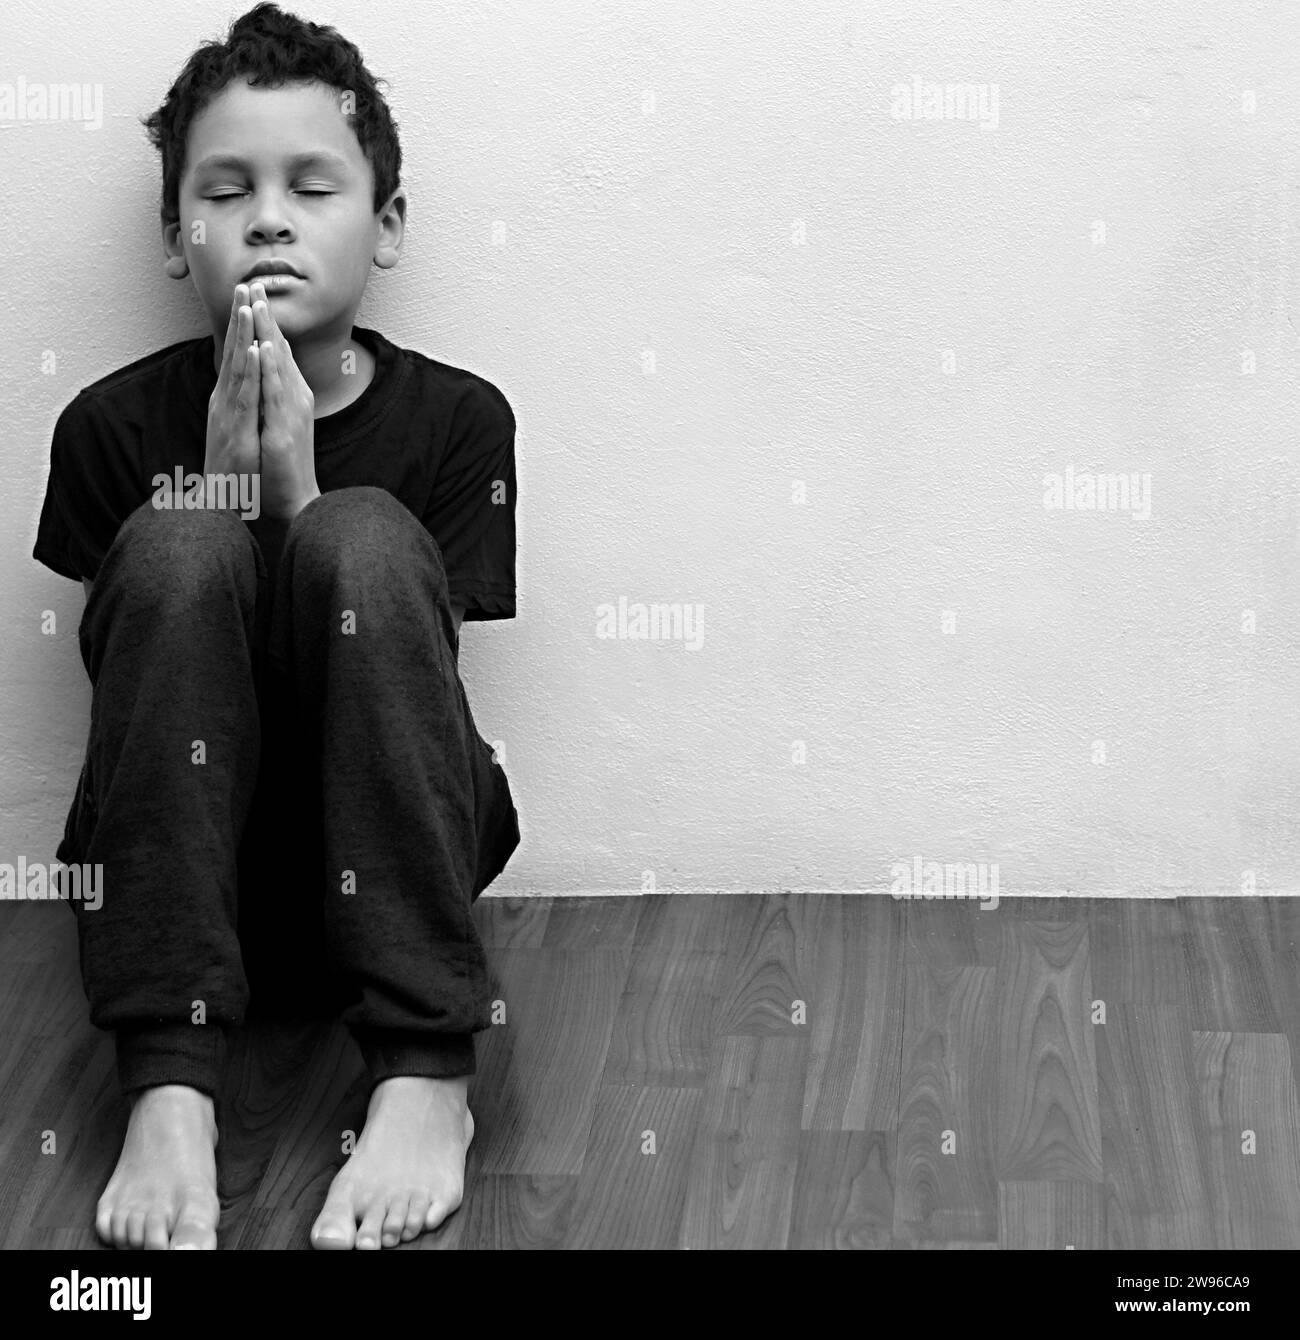 ragazzo che prega in povertà sul pavimento immagine stock senza aiuto piangere da solo e tutto da solo su sfondo bianco foto stock Foto Stock